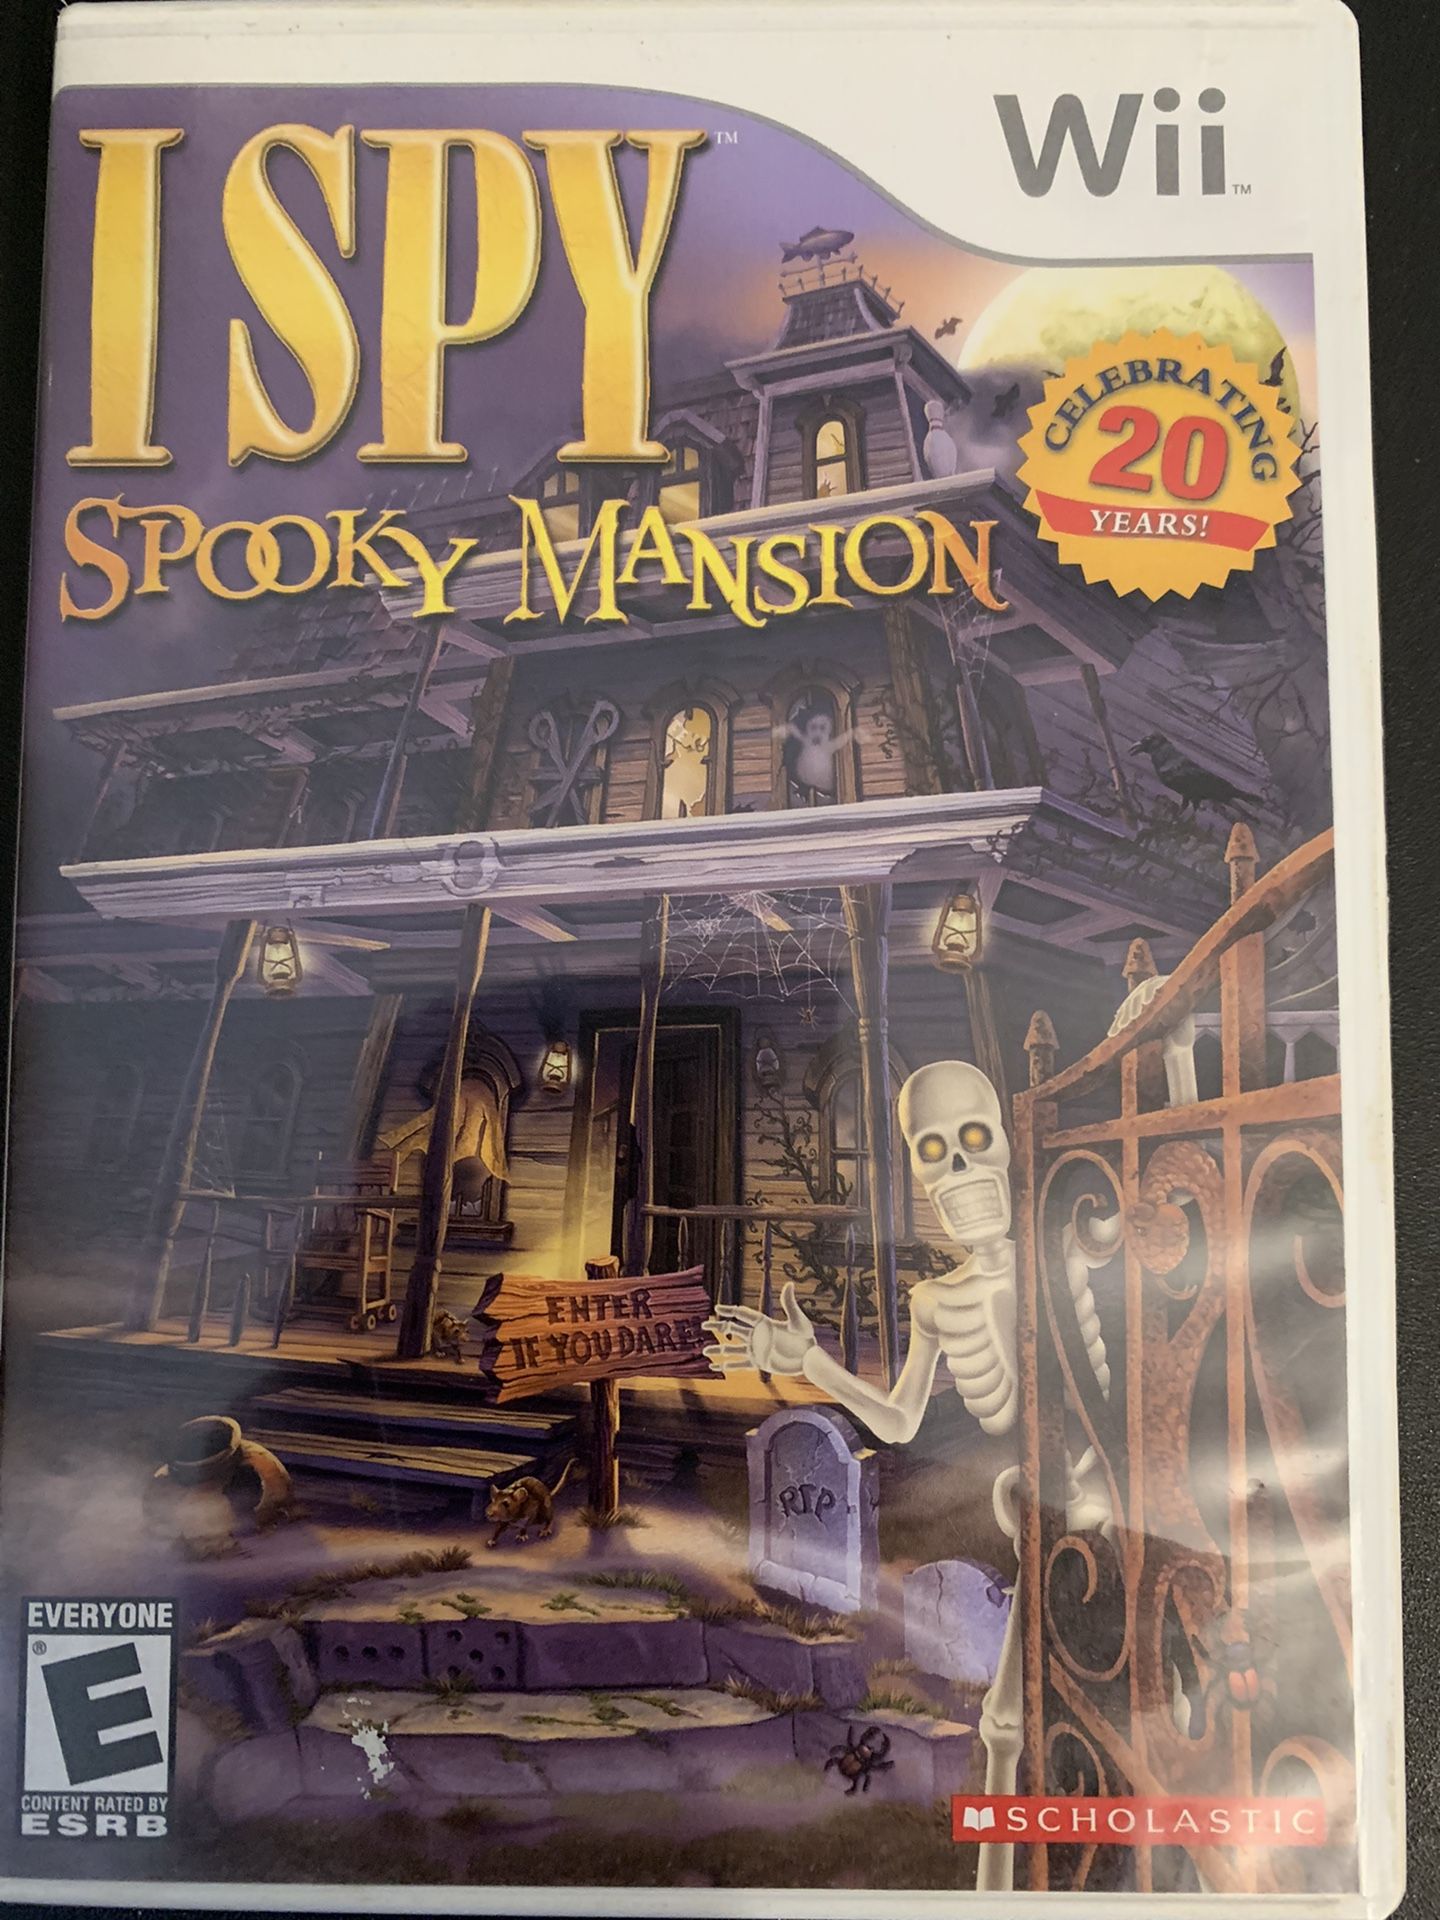 I SPY Spooky Mansion (Nintendo Wii + Wii U)